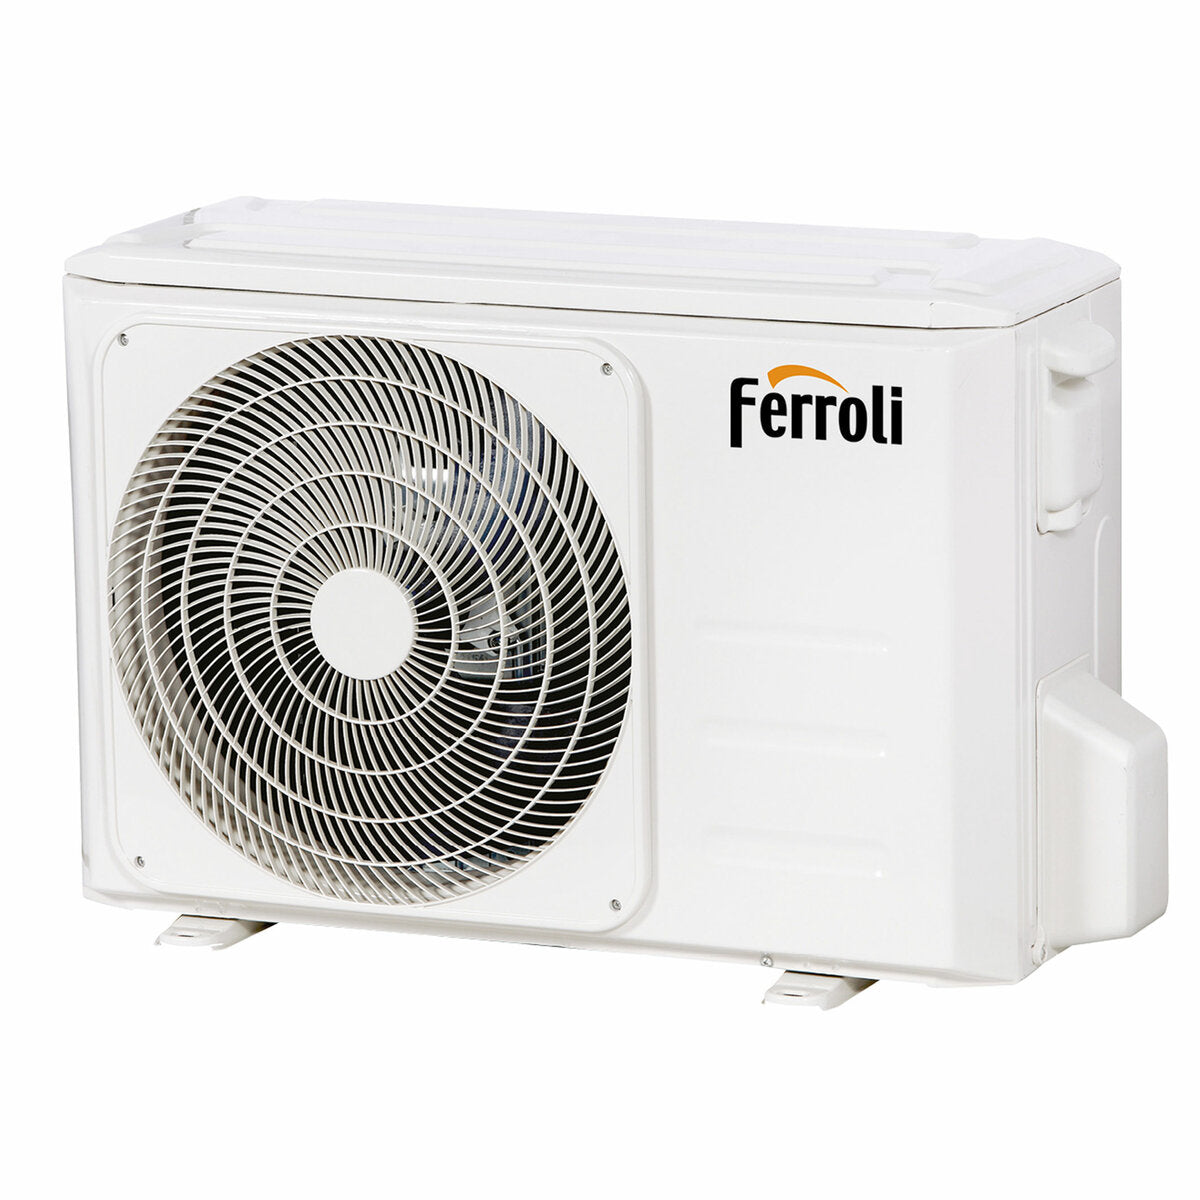 Ferroli Giada dual split air conditioner 18000+18000 BTU inverter A wifi outdoor unit 8.2 kW